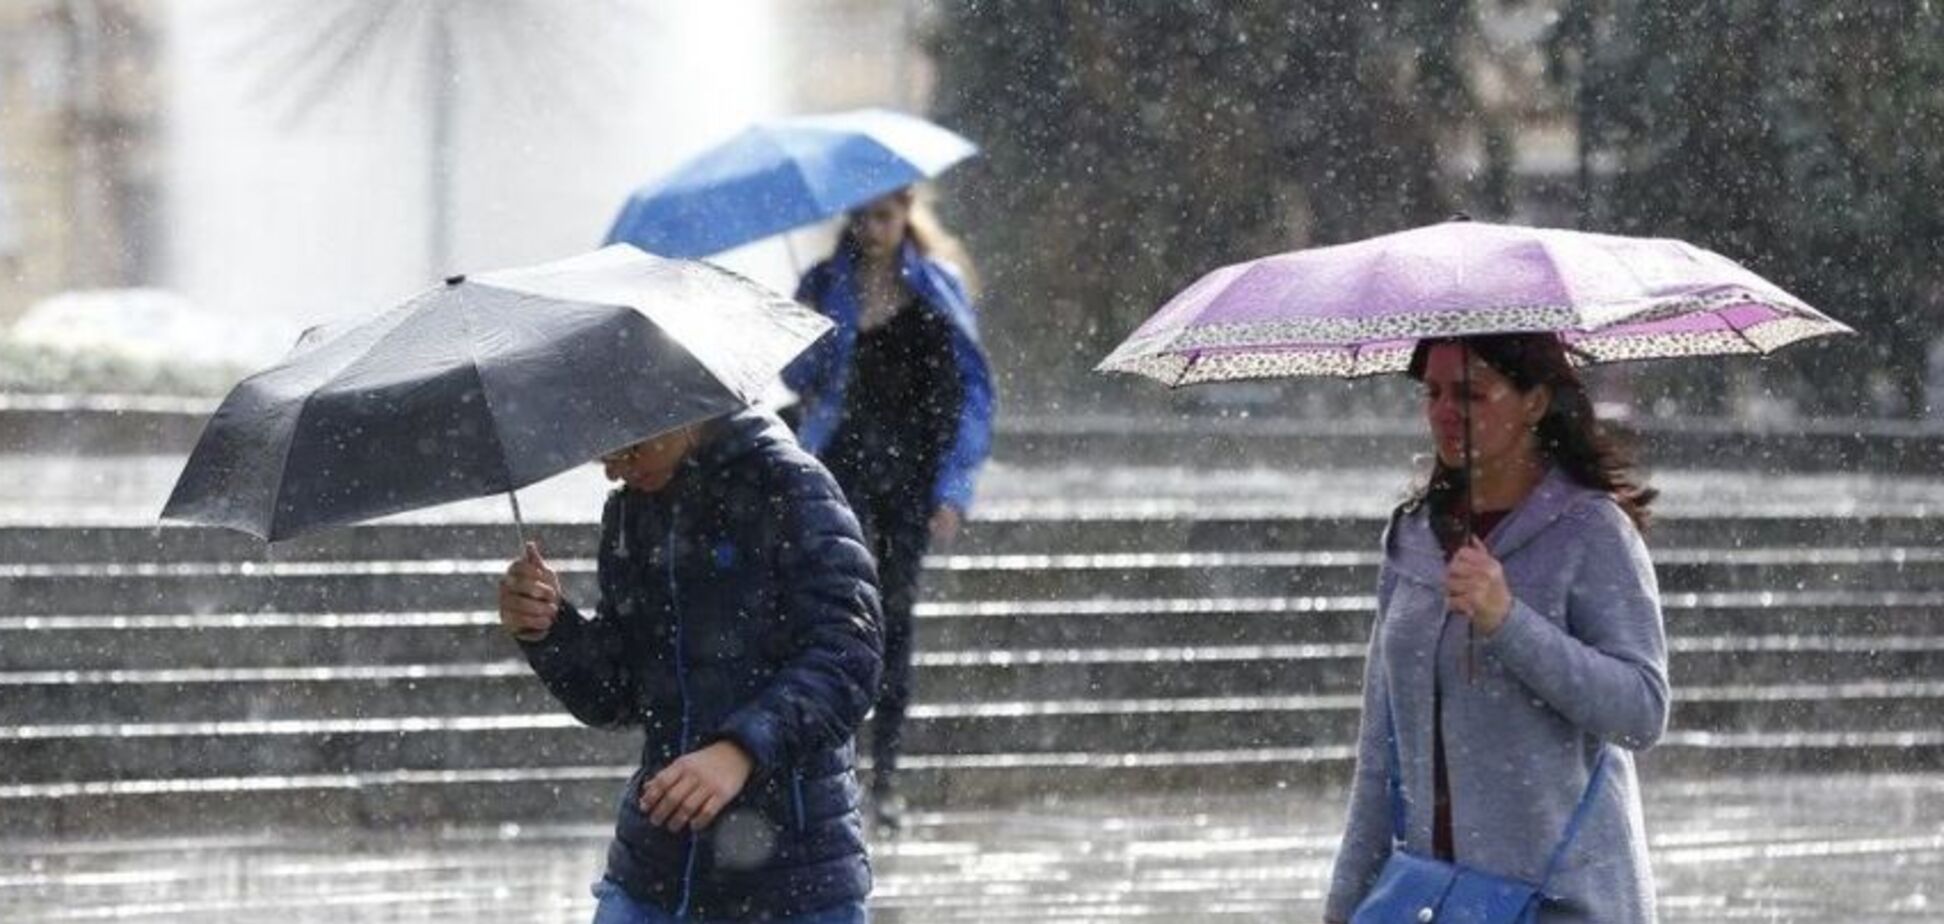   Шквалы, дожди и снег: синоптики уточнили прогноз погоды в Украине